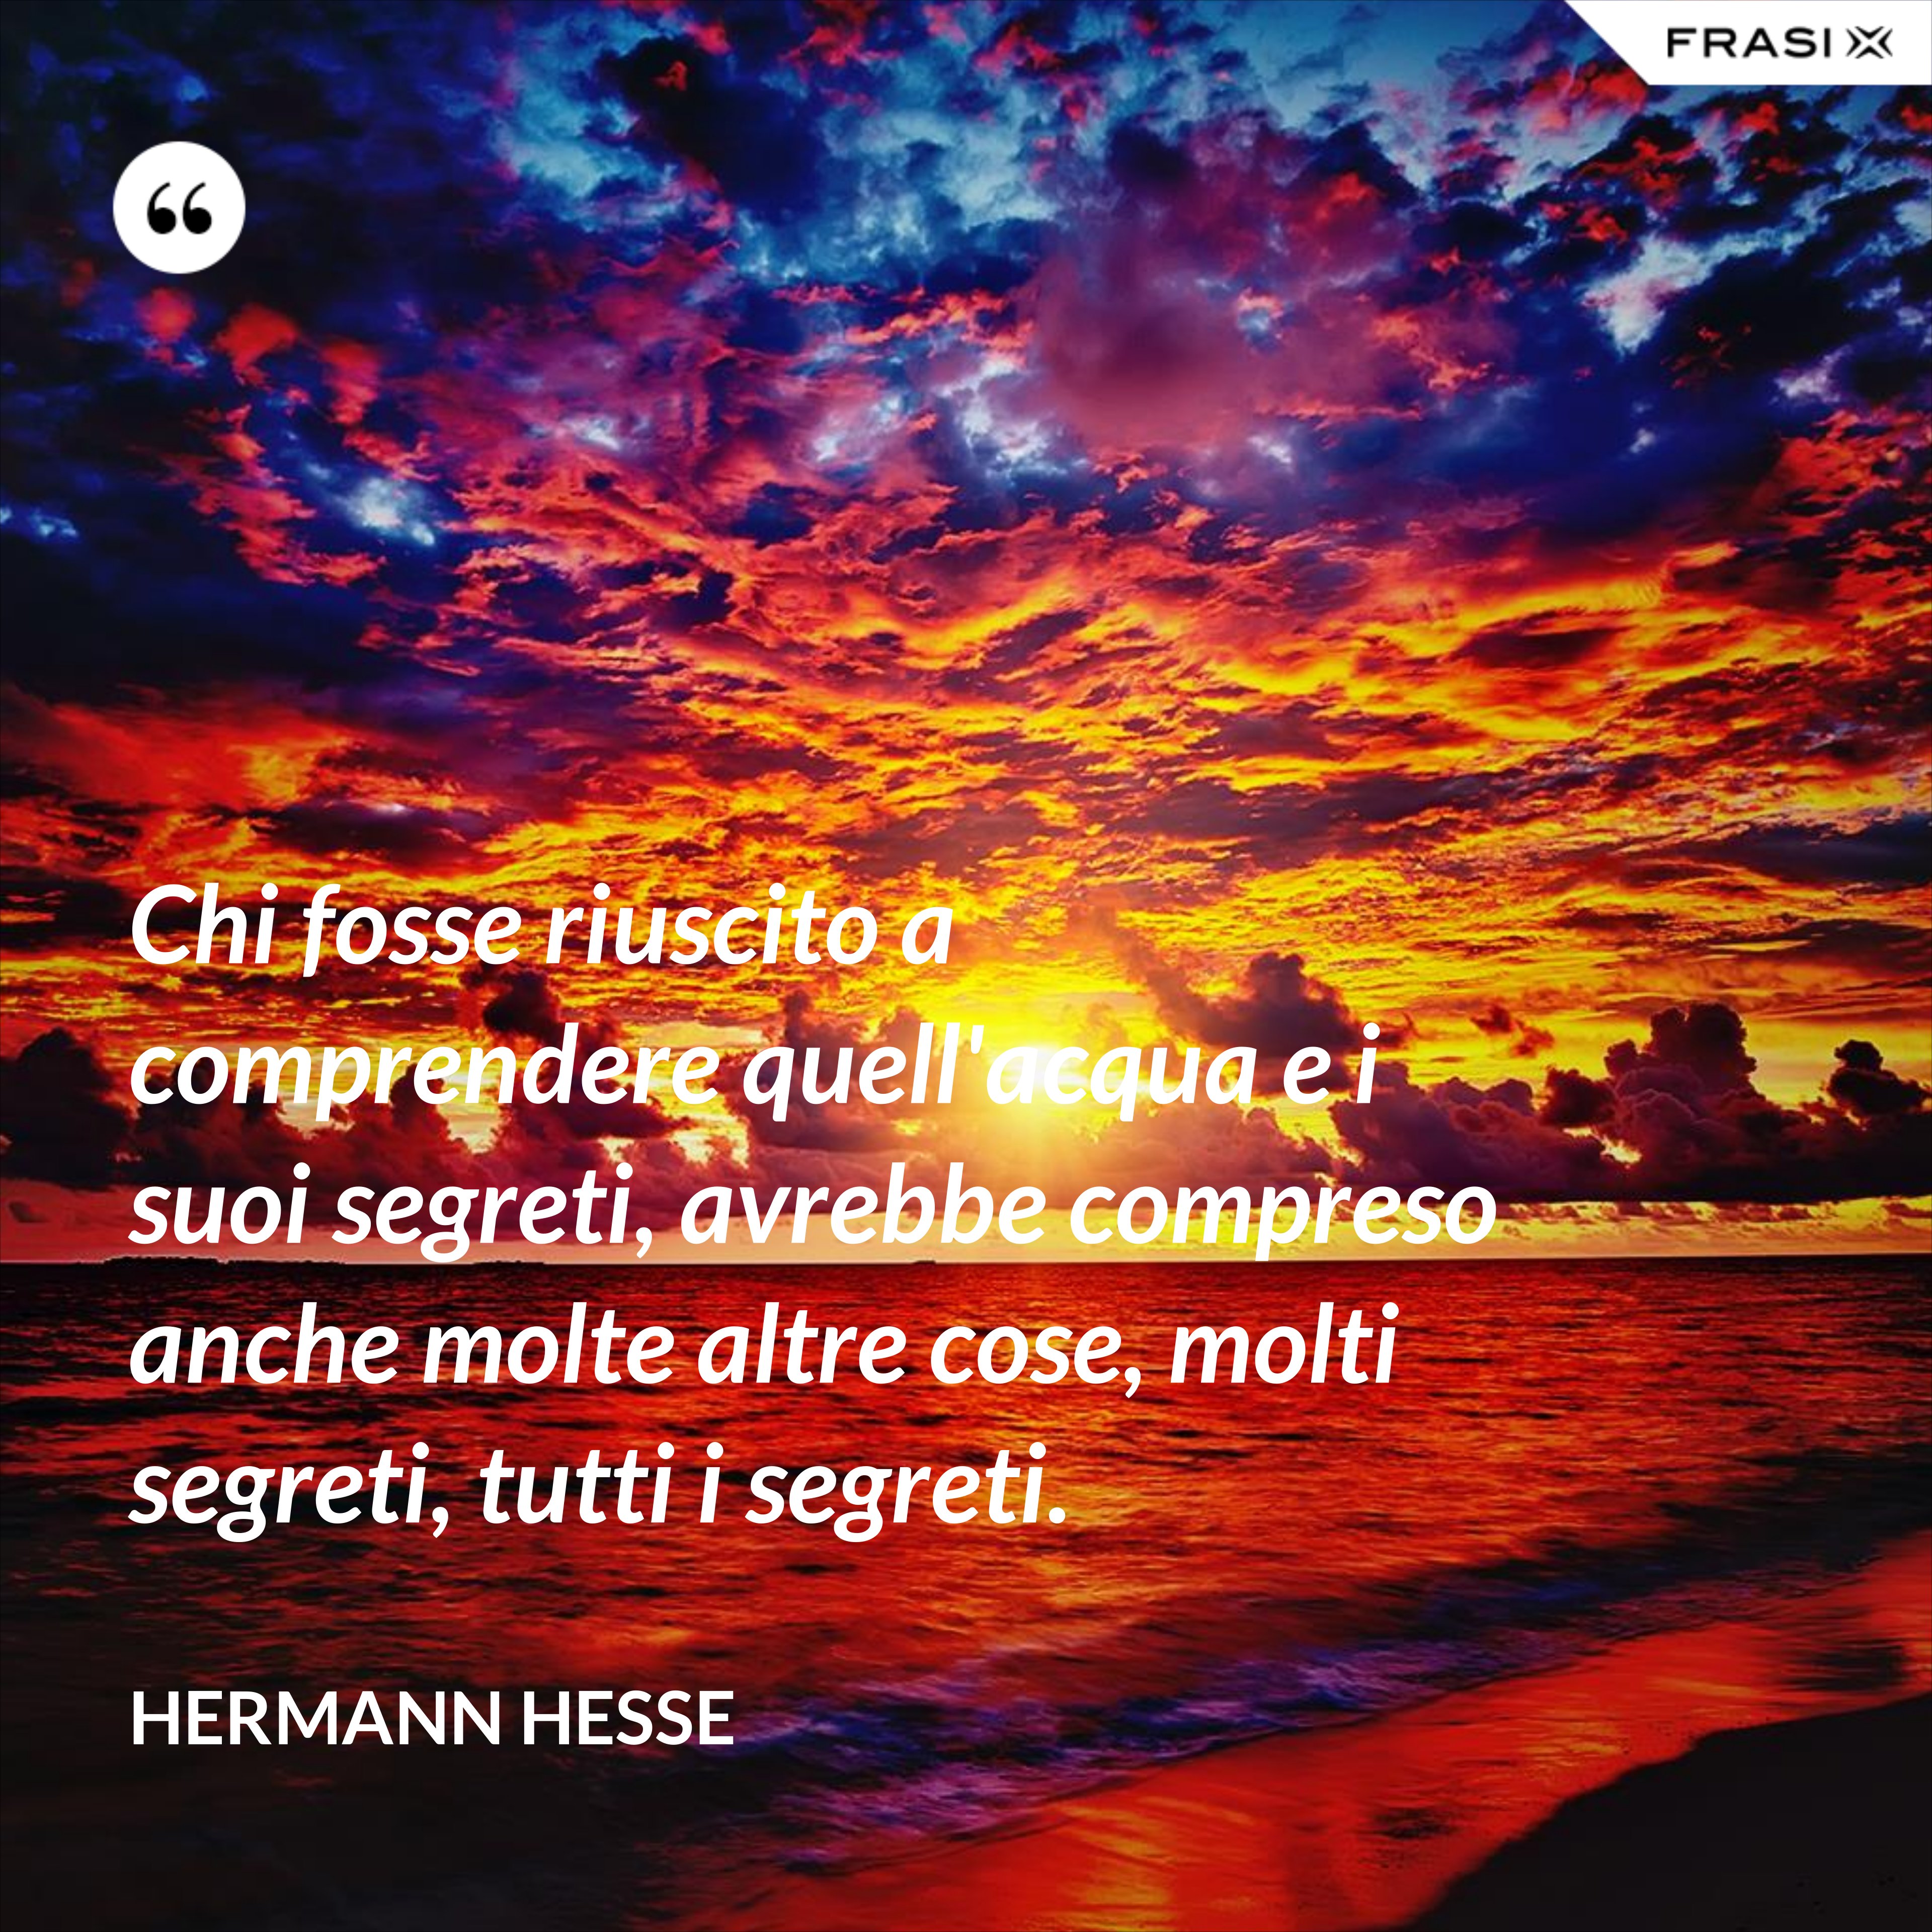 Chi fosse riuscito a comprendere quell'acqua e i suoi segreti, avrebbe compreso anche molte altre cose, molti segreti, tutti i segreti. - Hermann Hesse